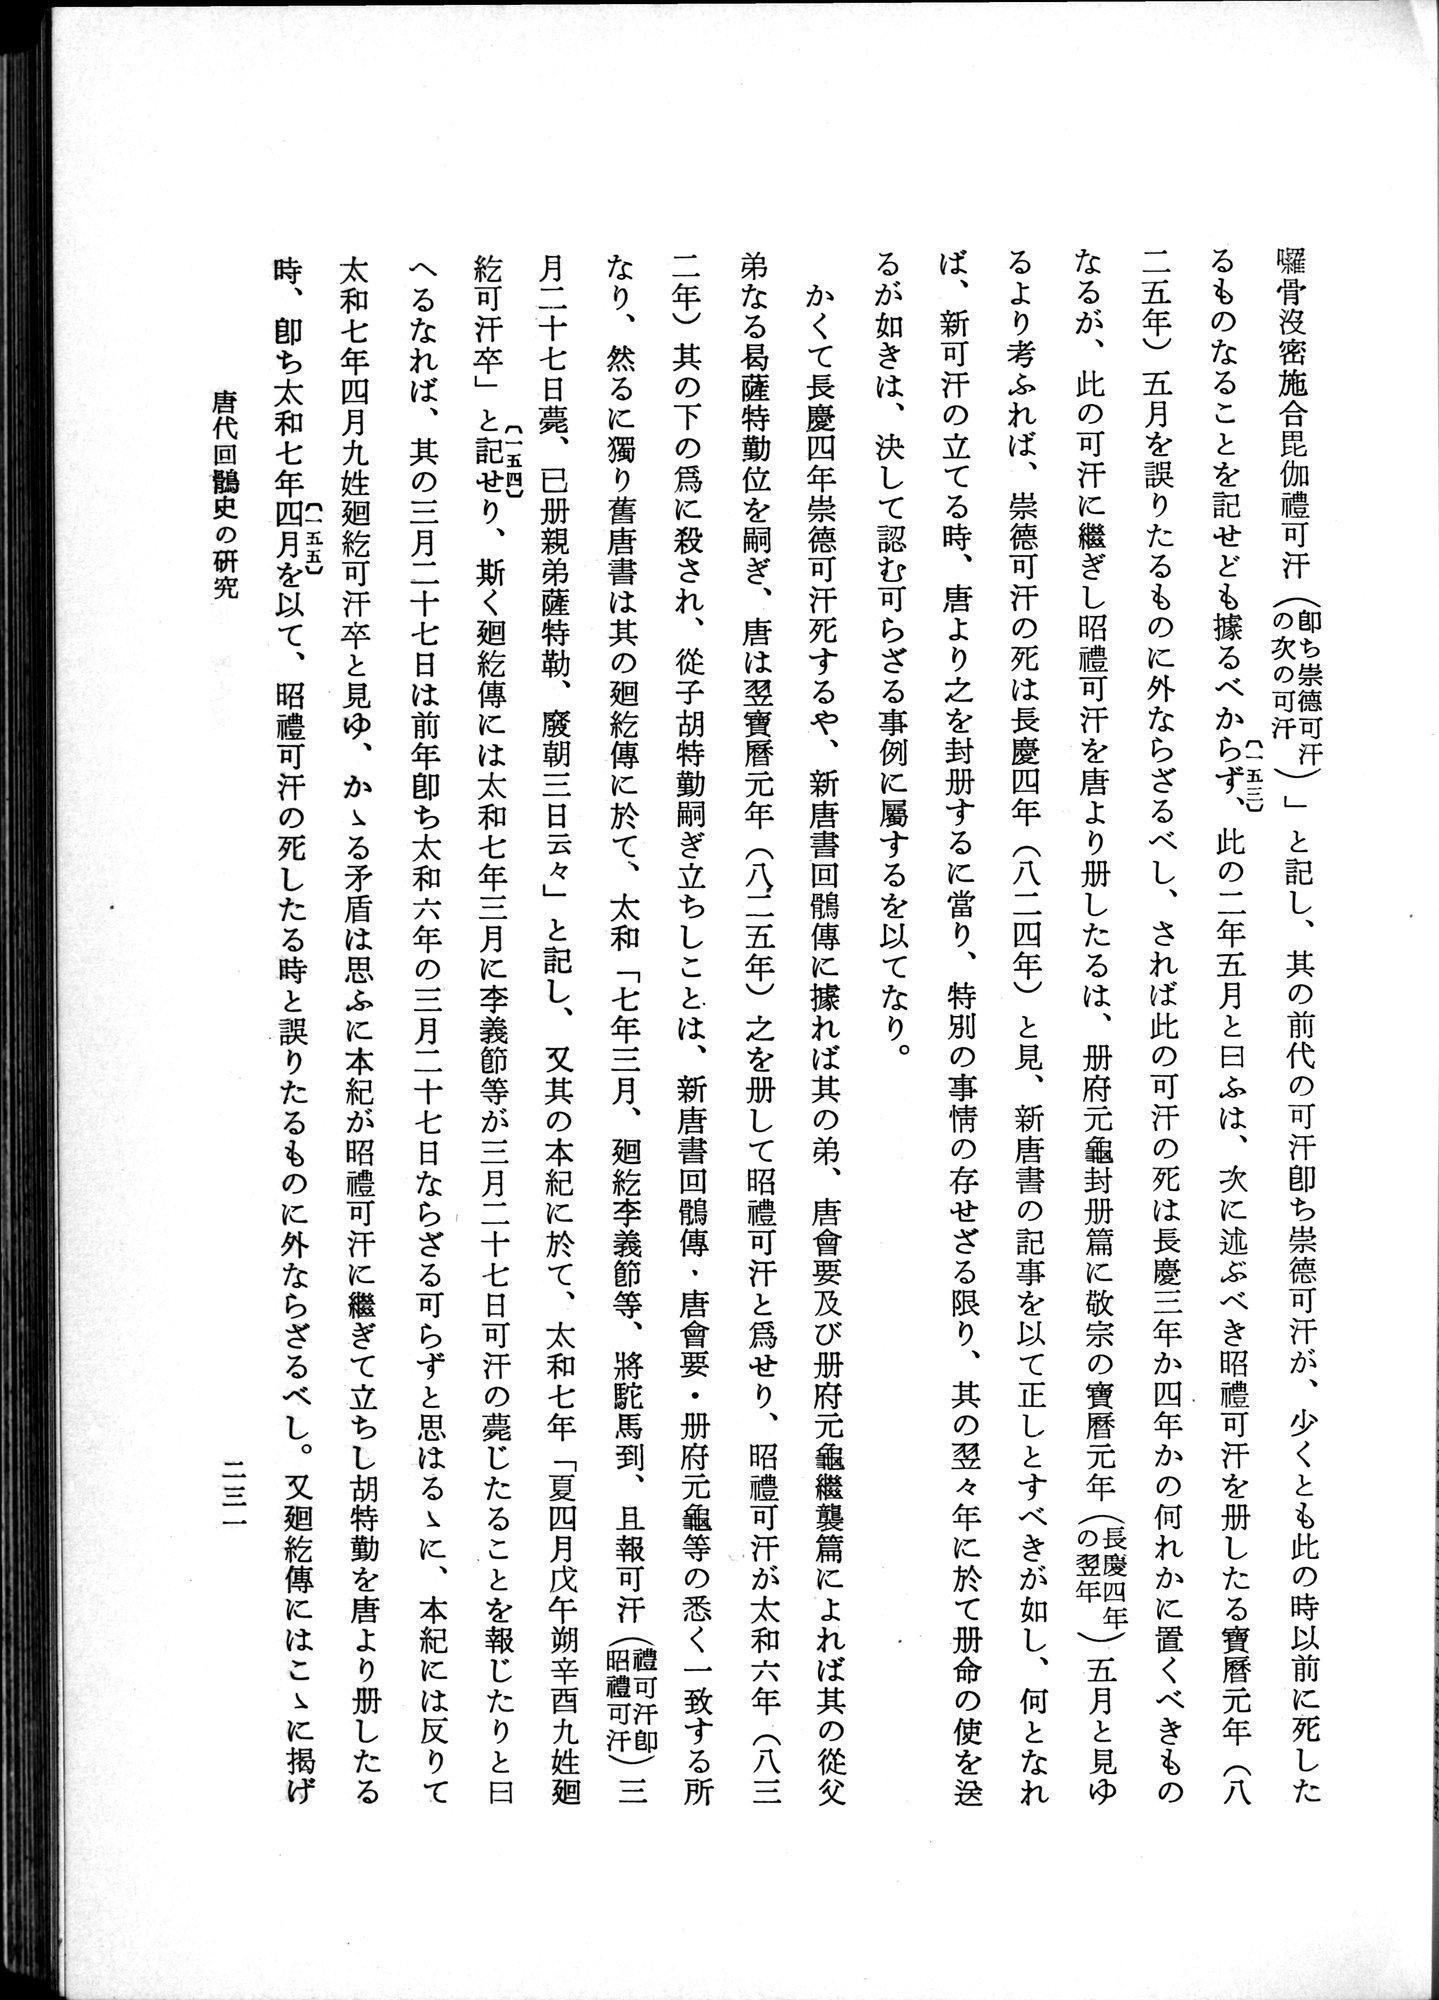 羽田博士史学論文集 : vol.1 / Page 269 (Grayscale High Resolution Image)